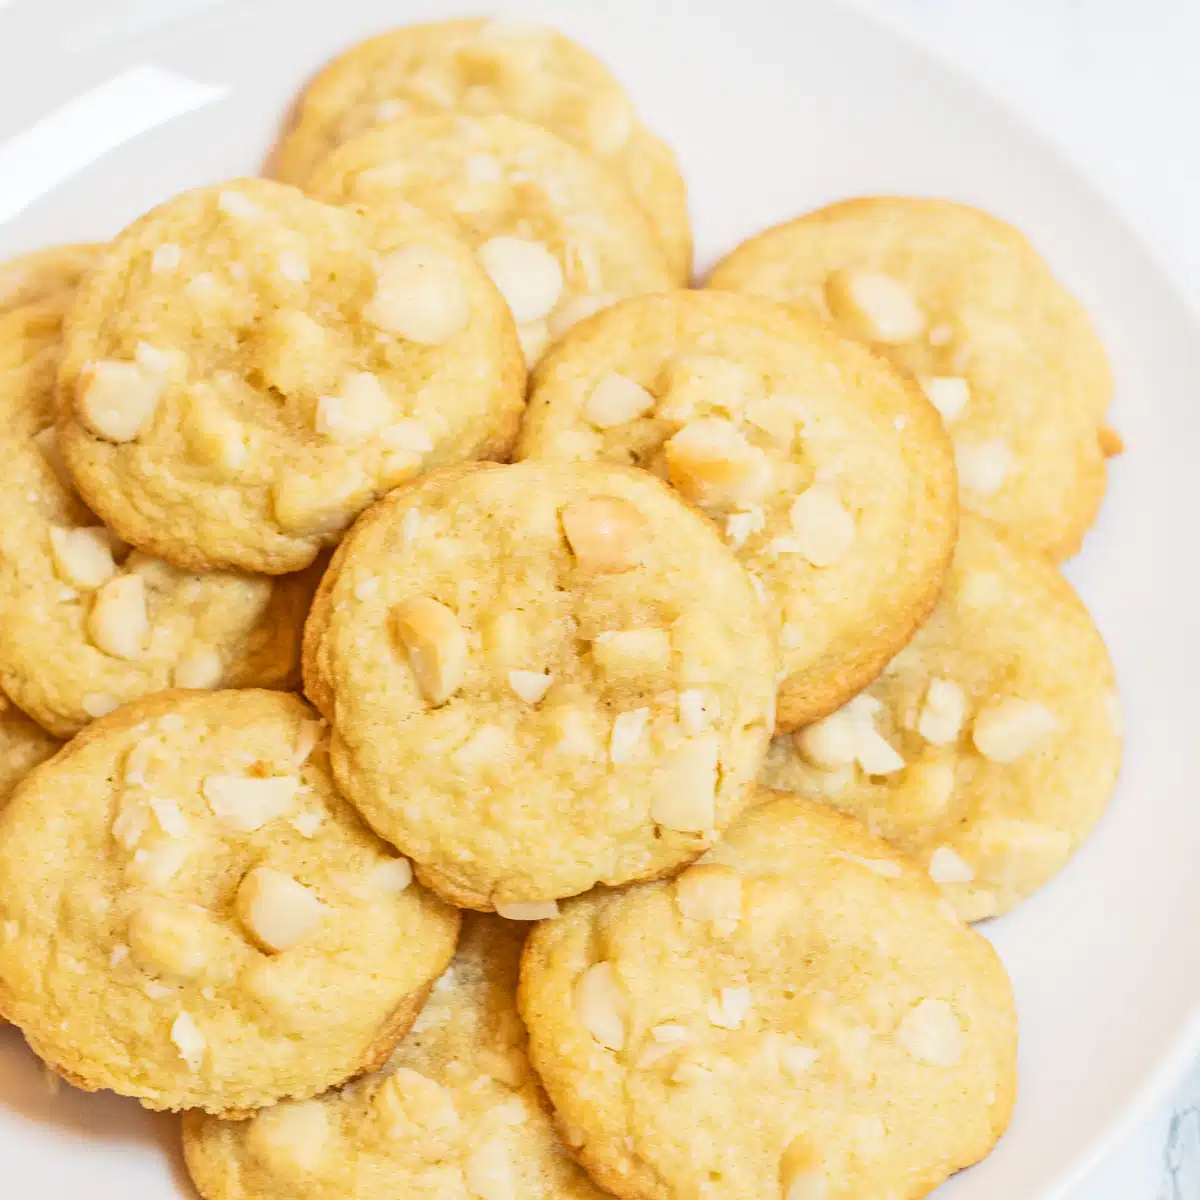 Soğuduktan sonra beyaz tabakta servis edilen en iyi macadamia fındıklı kurabiye tarifi.